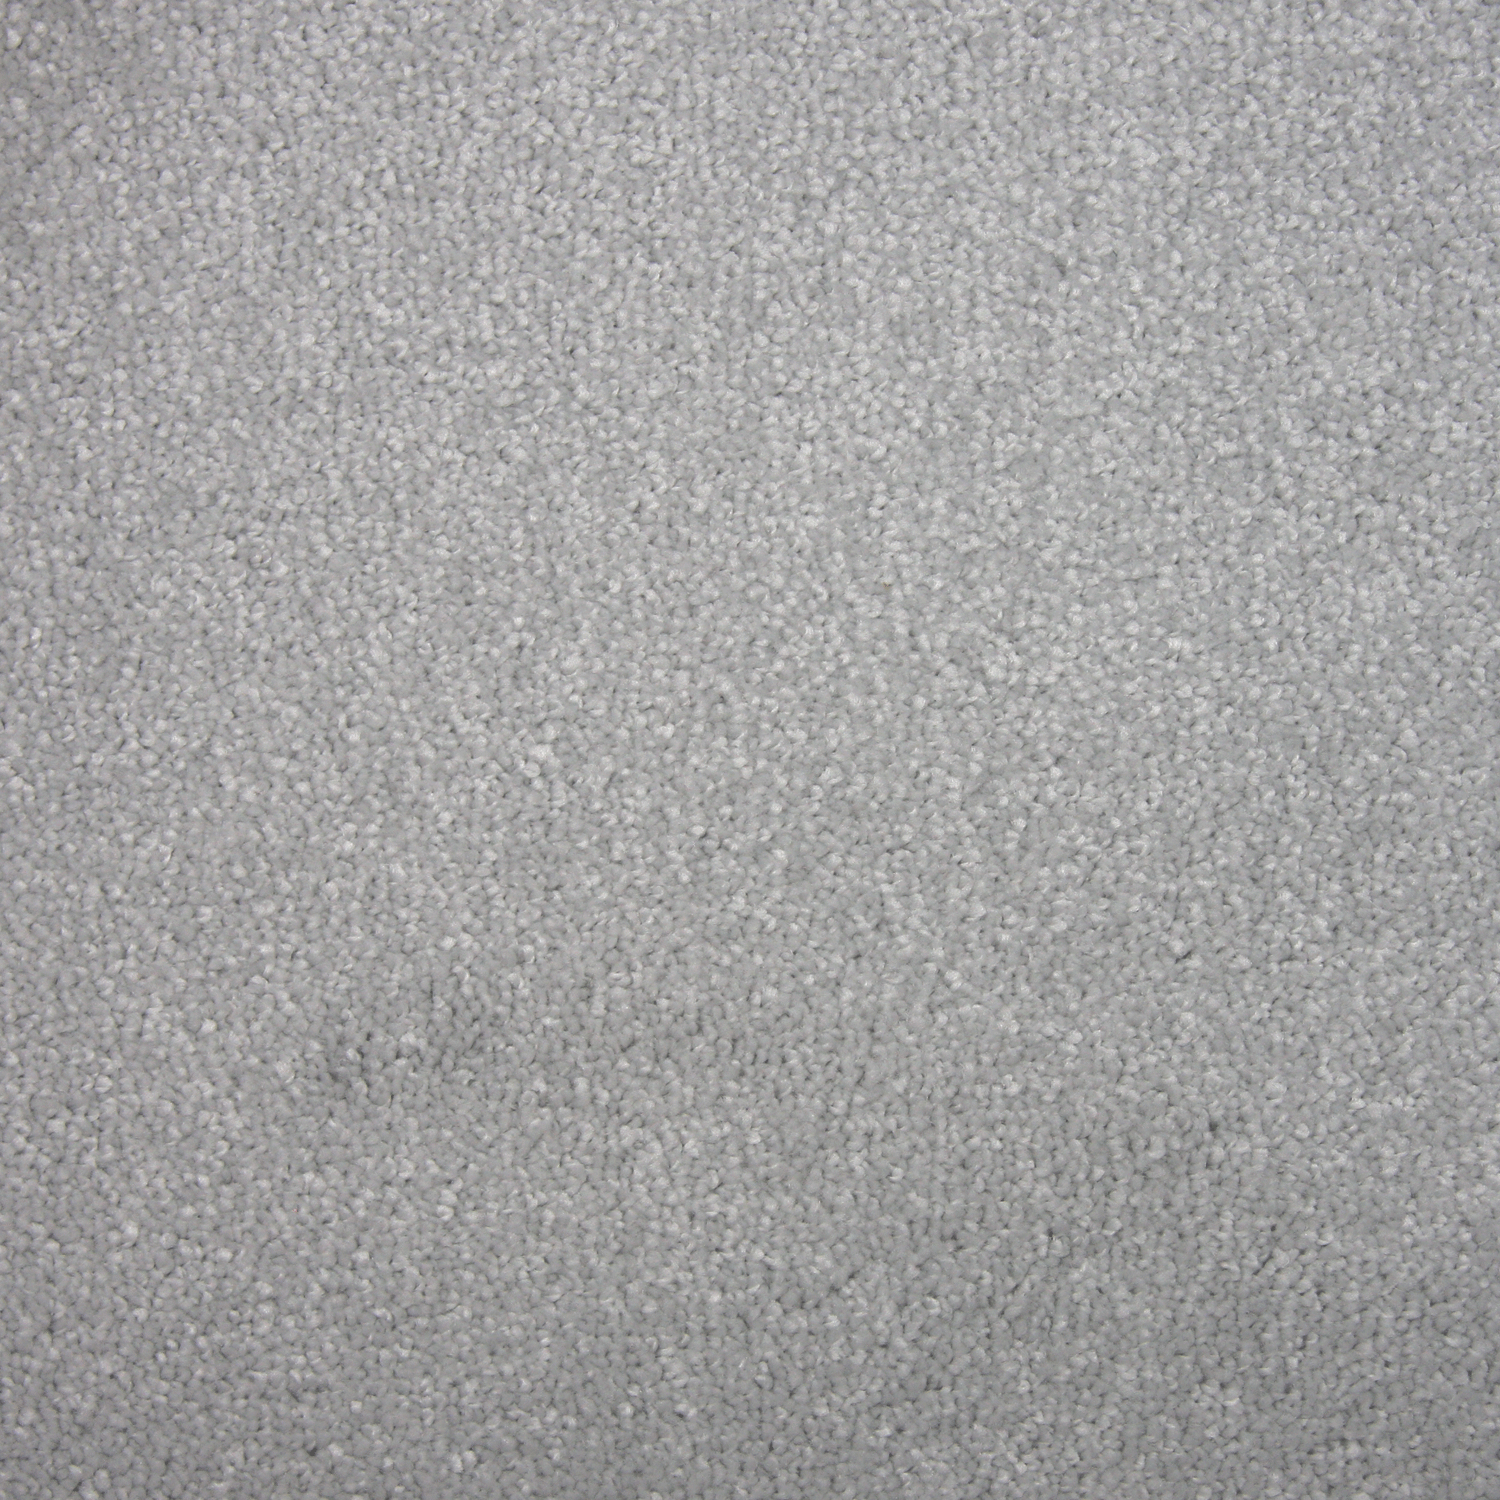 Carpet name: Smart Christchurch Frosty Glaze